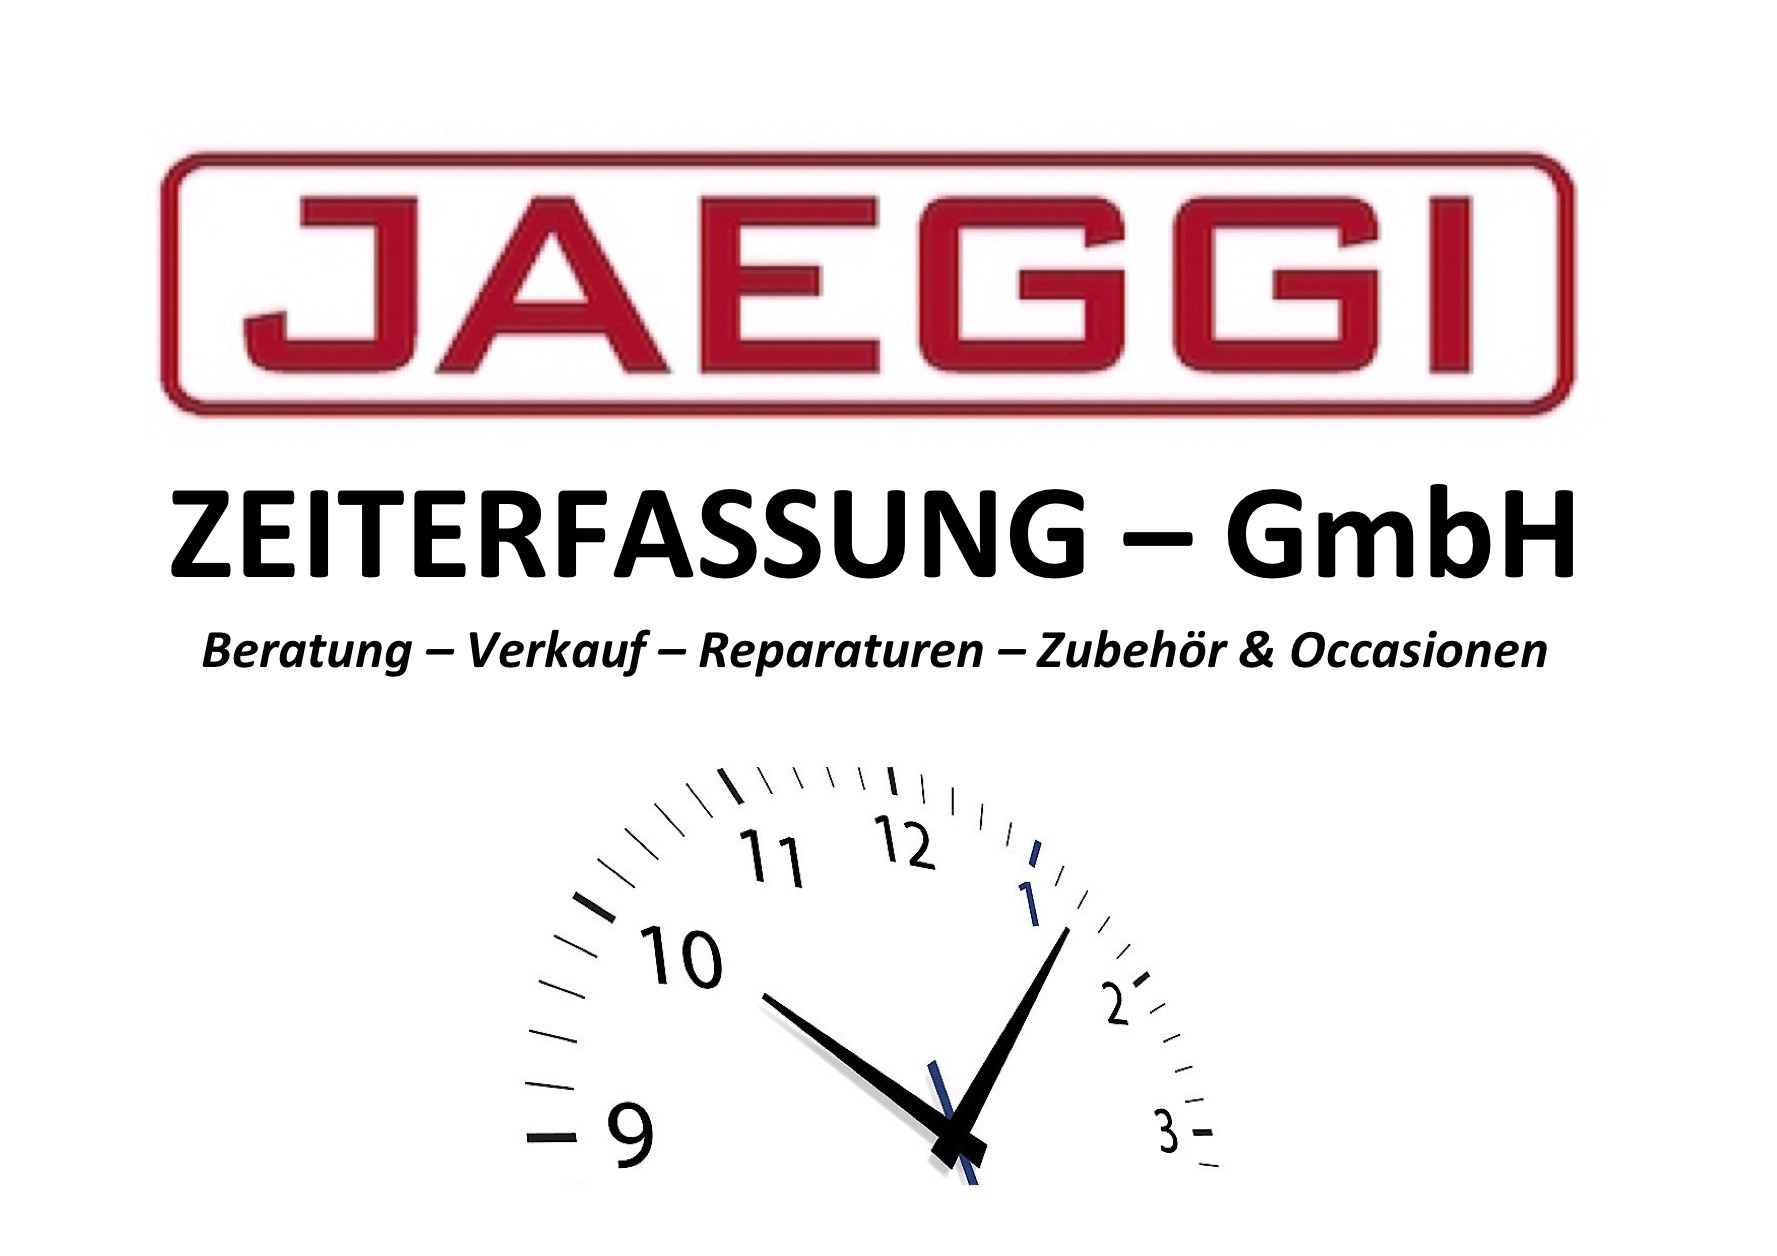 Jaeggi Zeiterfassung GmbH Lyss + Zürich 